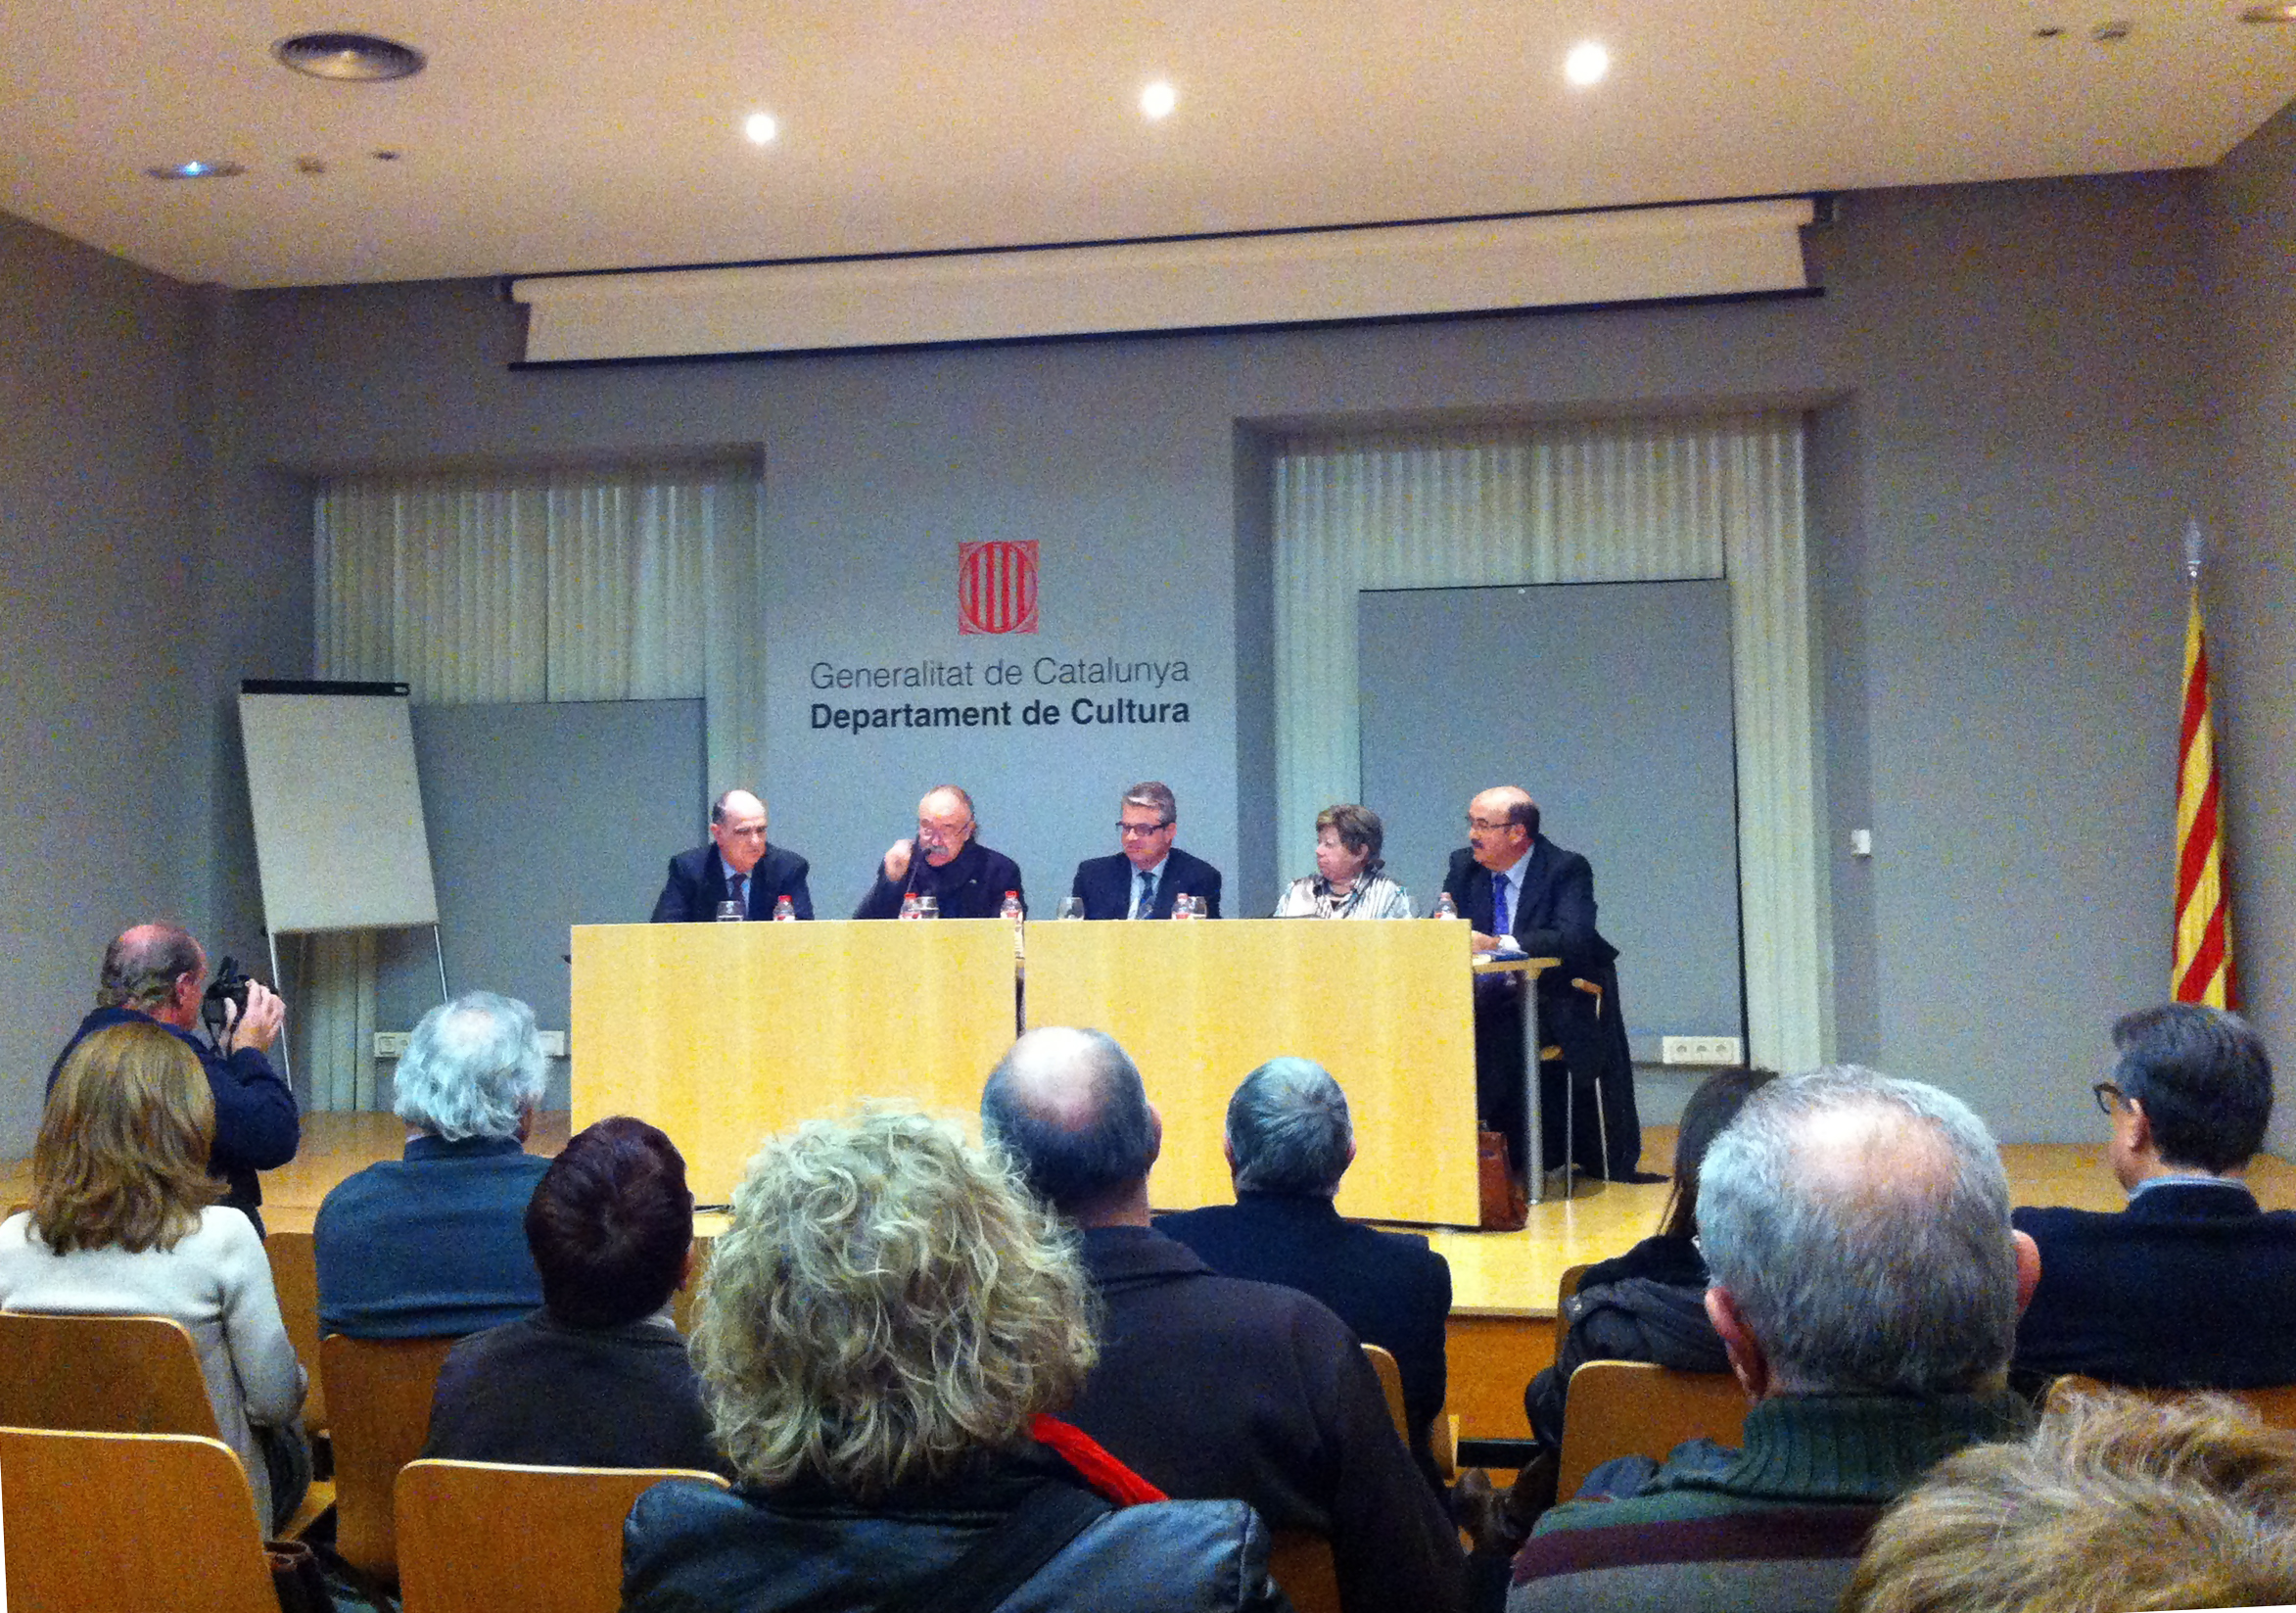 Presentació de "La passió italiana" amb Francesc Xavier Grau, Josep Lluís Carod-Rovira, Jordi Agràs, Olga Xirinacs i Josep Ramon Correal (foto: Quim Vendrell)